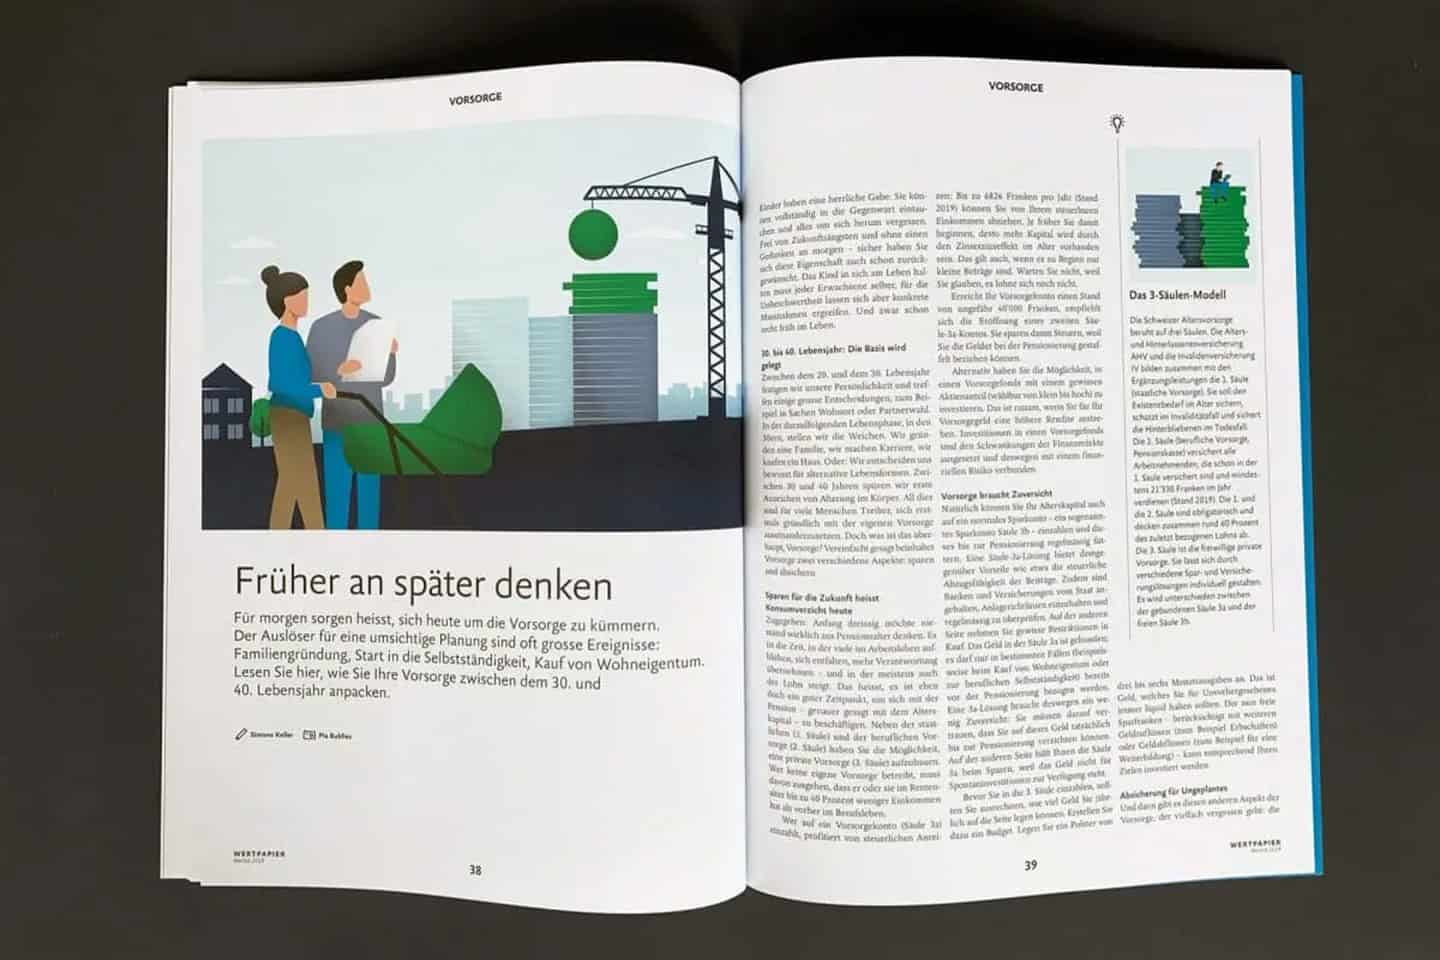 lukb-magazin-wertpapier-2019-01-ratgeber-story-1200x900